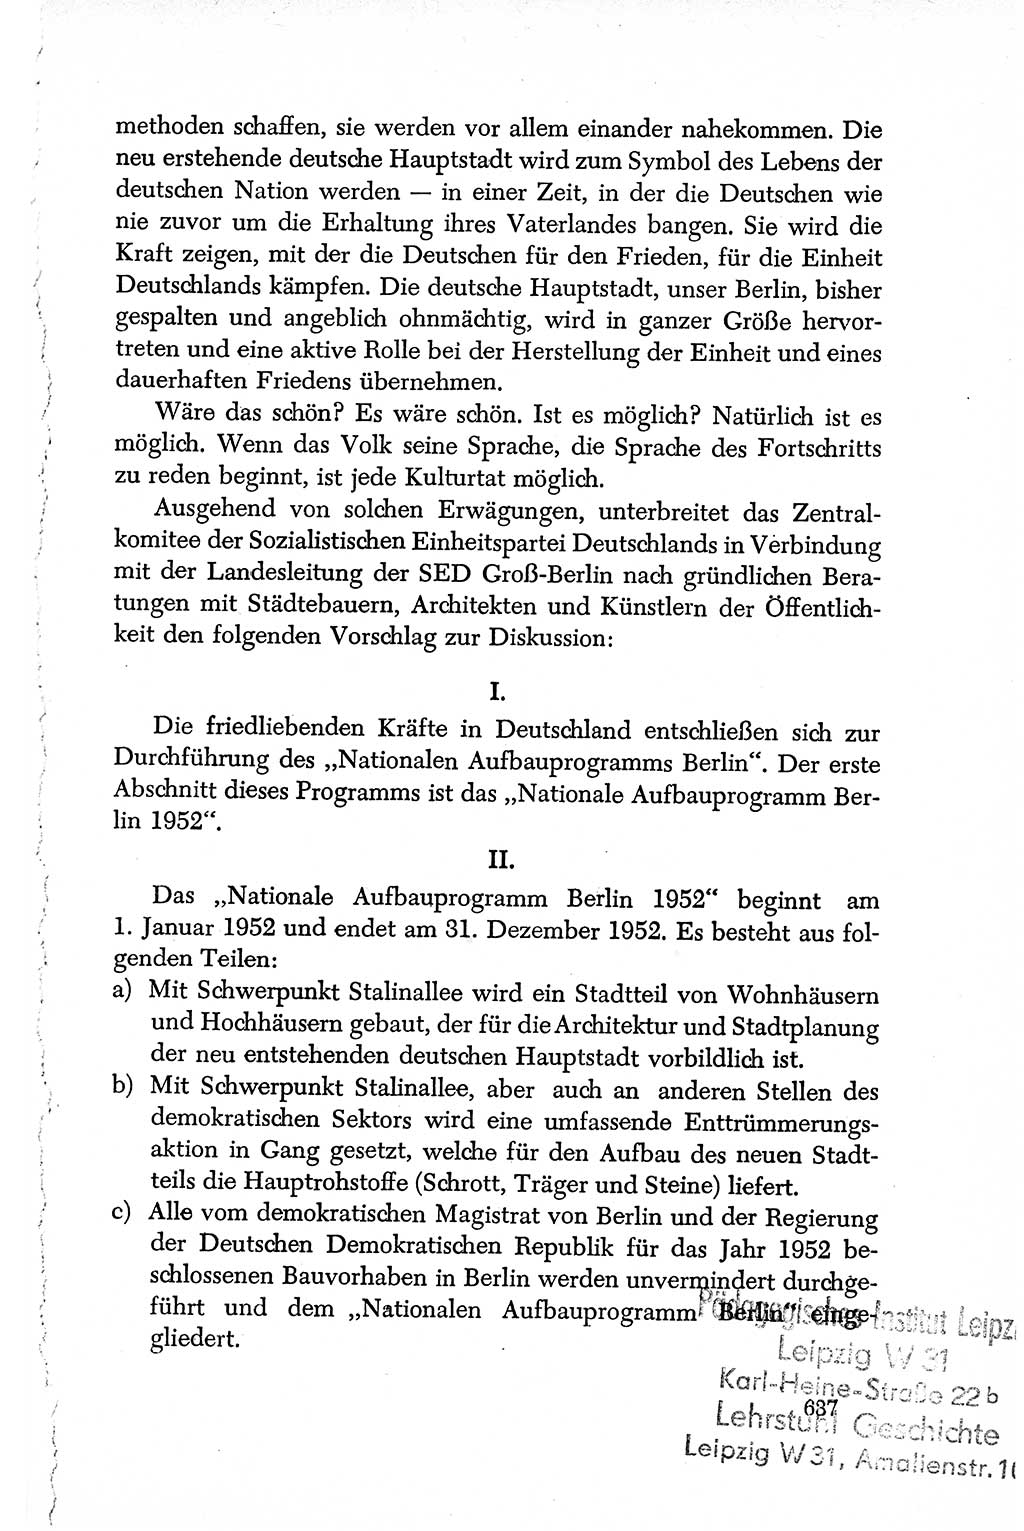 Dokumente der Sozialistischen Einheitspartei Deutschlands (SED) [Deutsche Demokratische Republik (DDR)] 1950-1952, Seite 637 (Dok. SED DDR 1950-1952, S. 637)